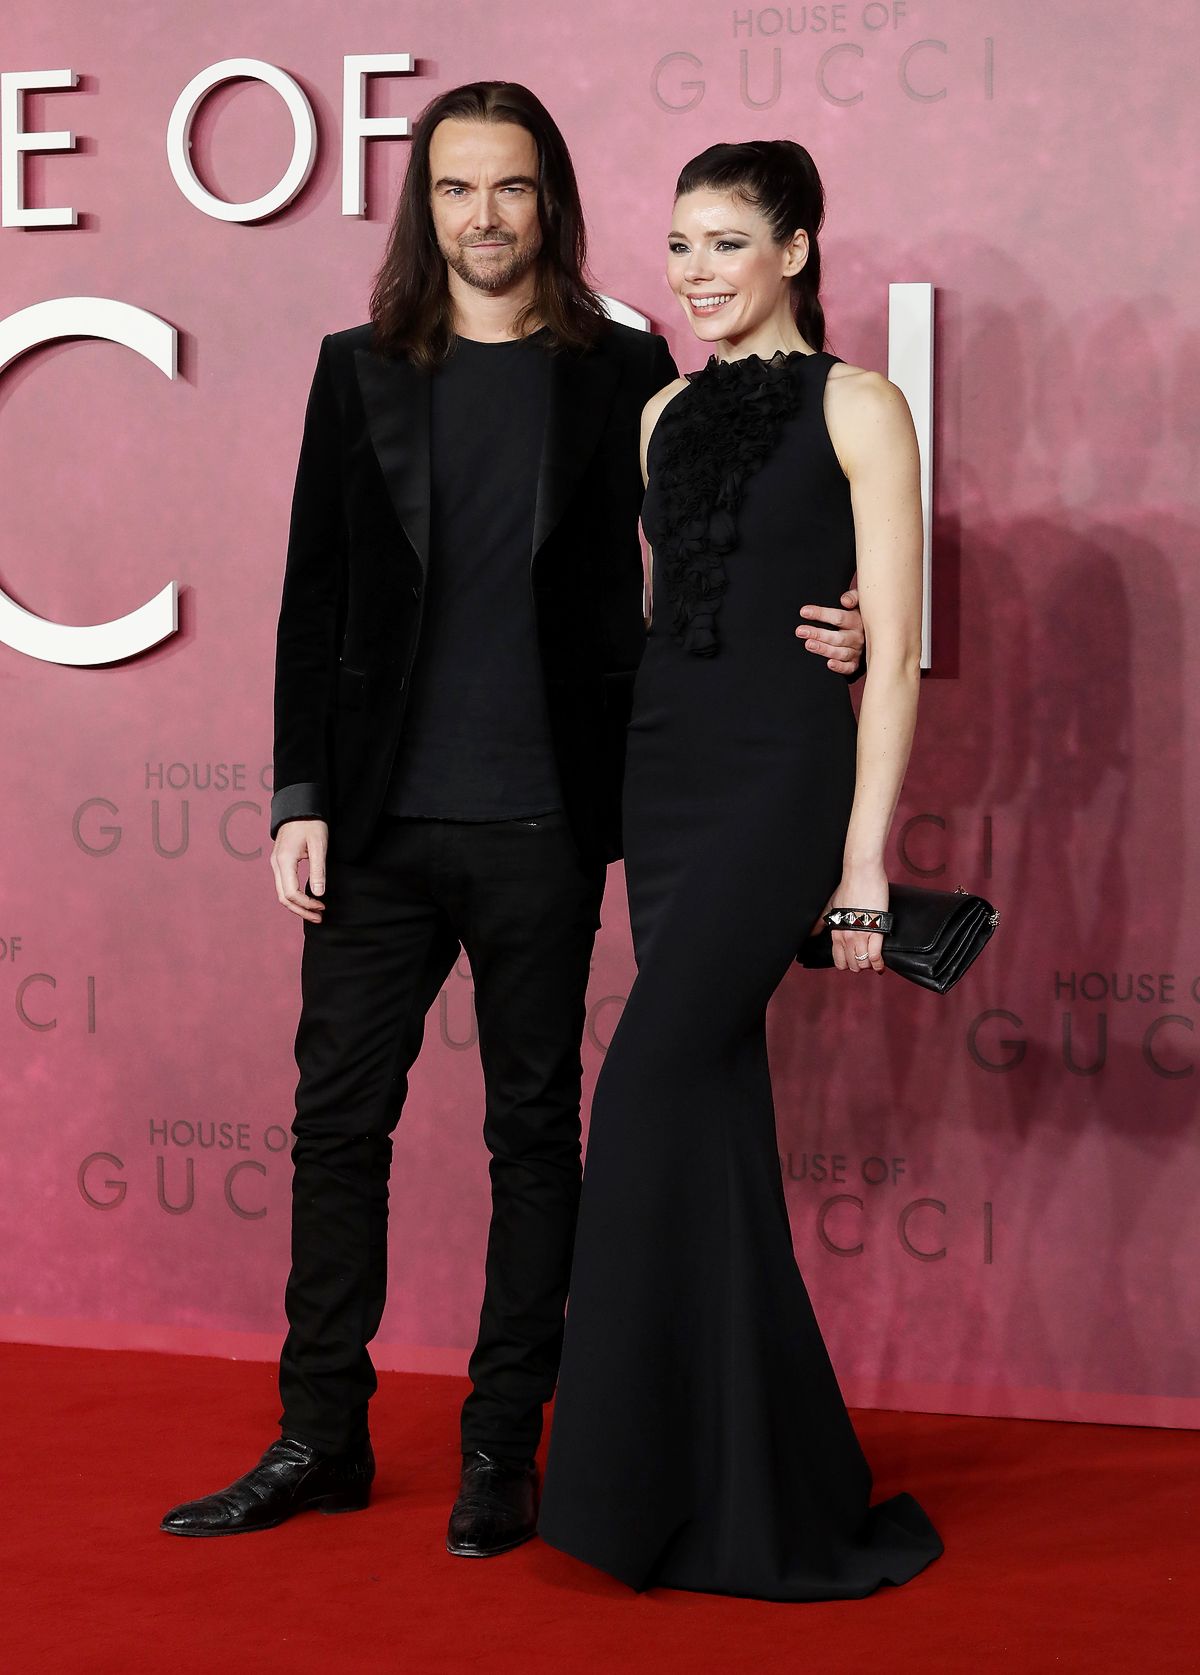 Джейсон Макнаб, Магдалена Сверлендер на премьере фильма «Дом Gucci» в Лондоне